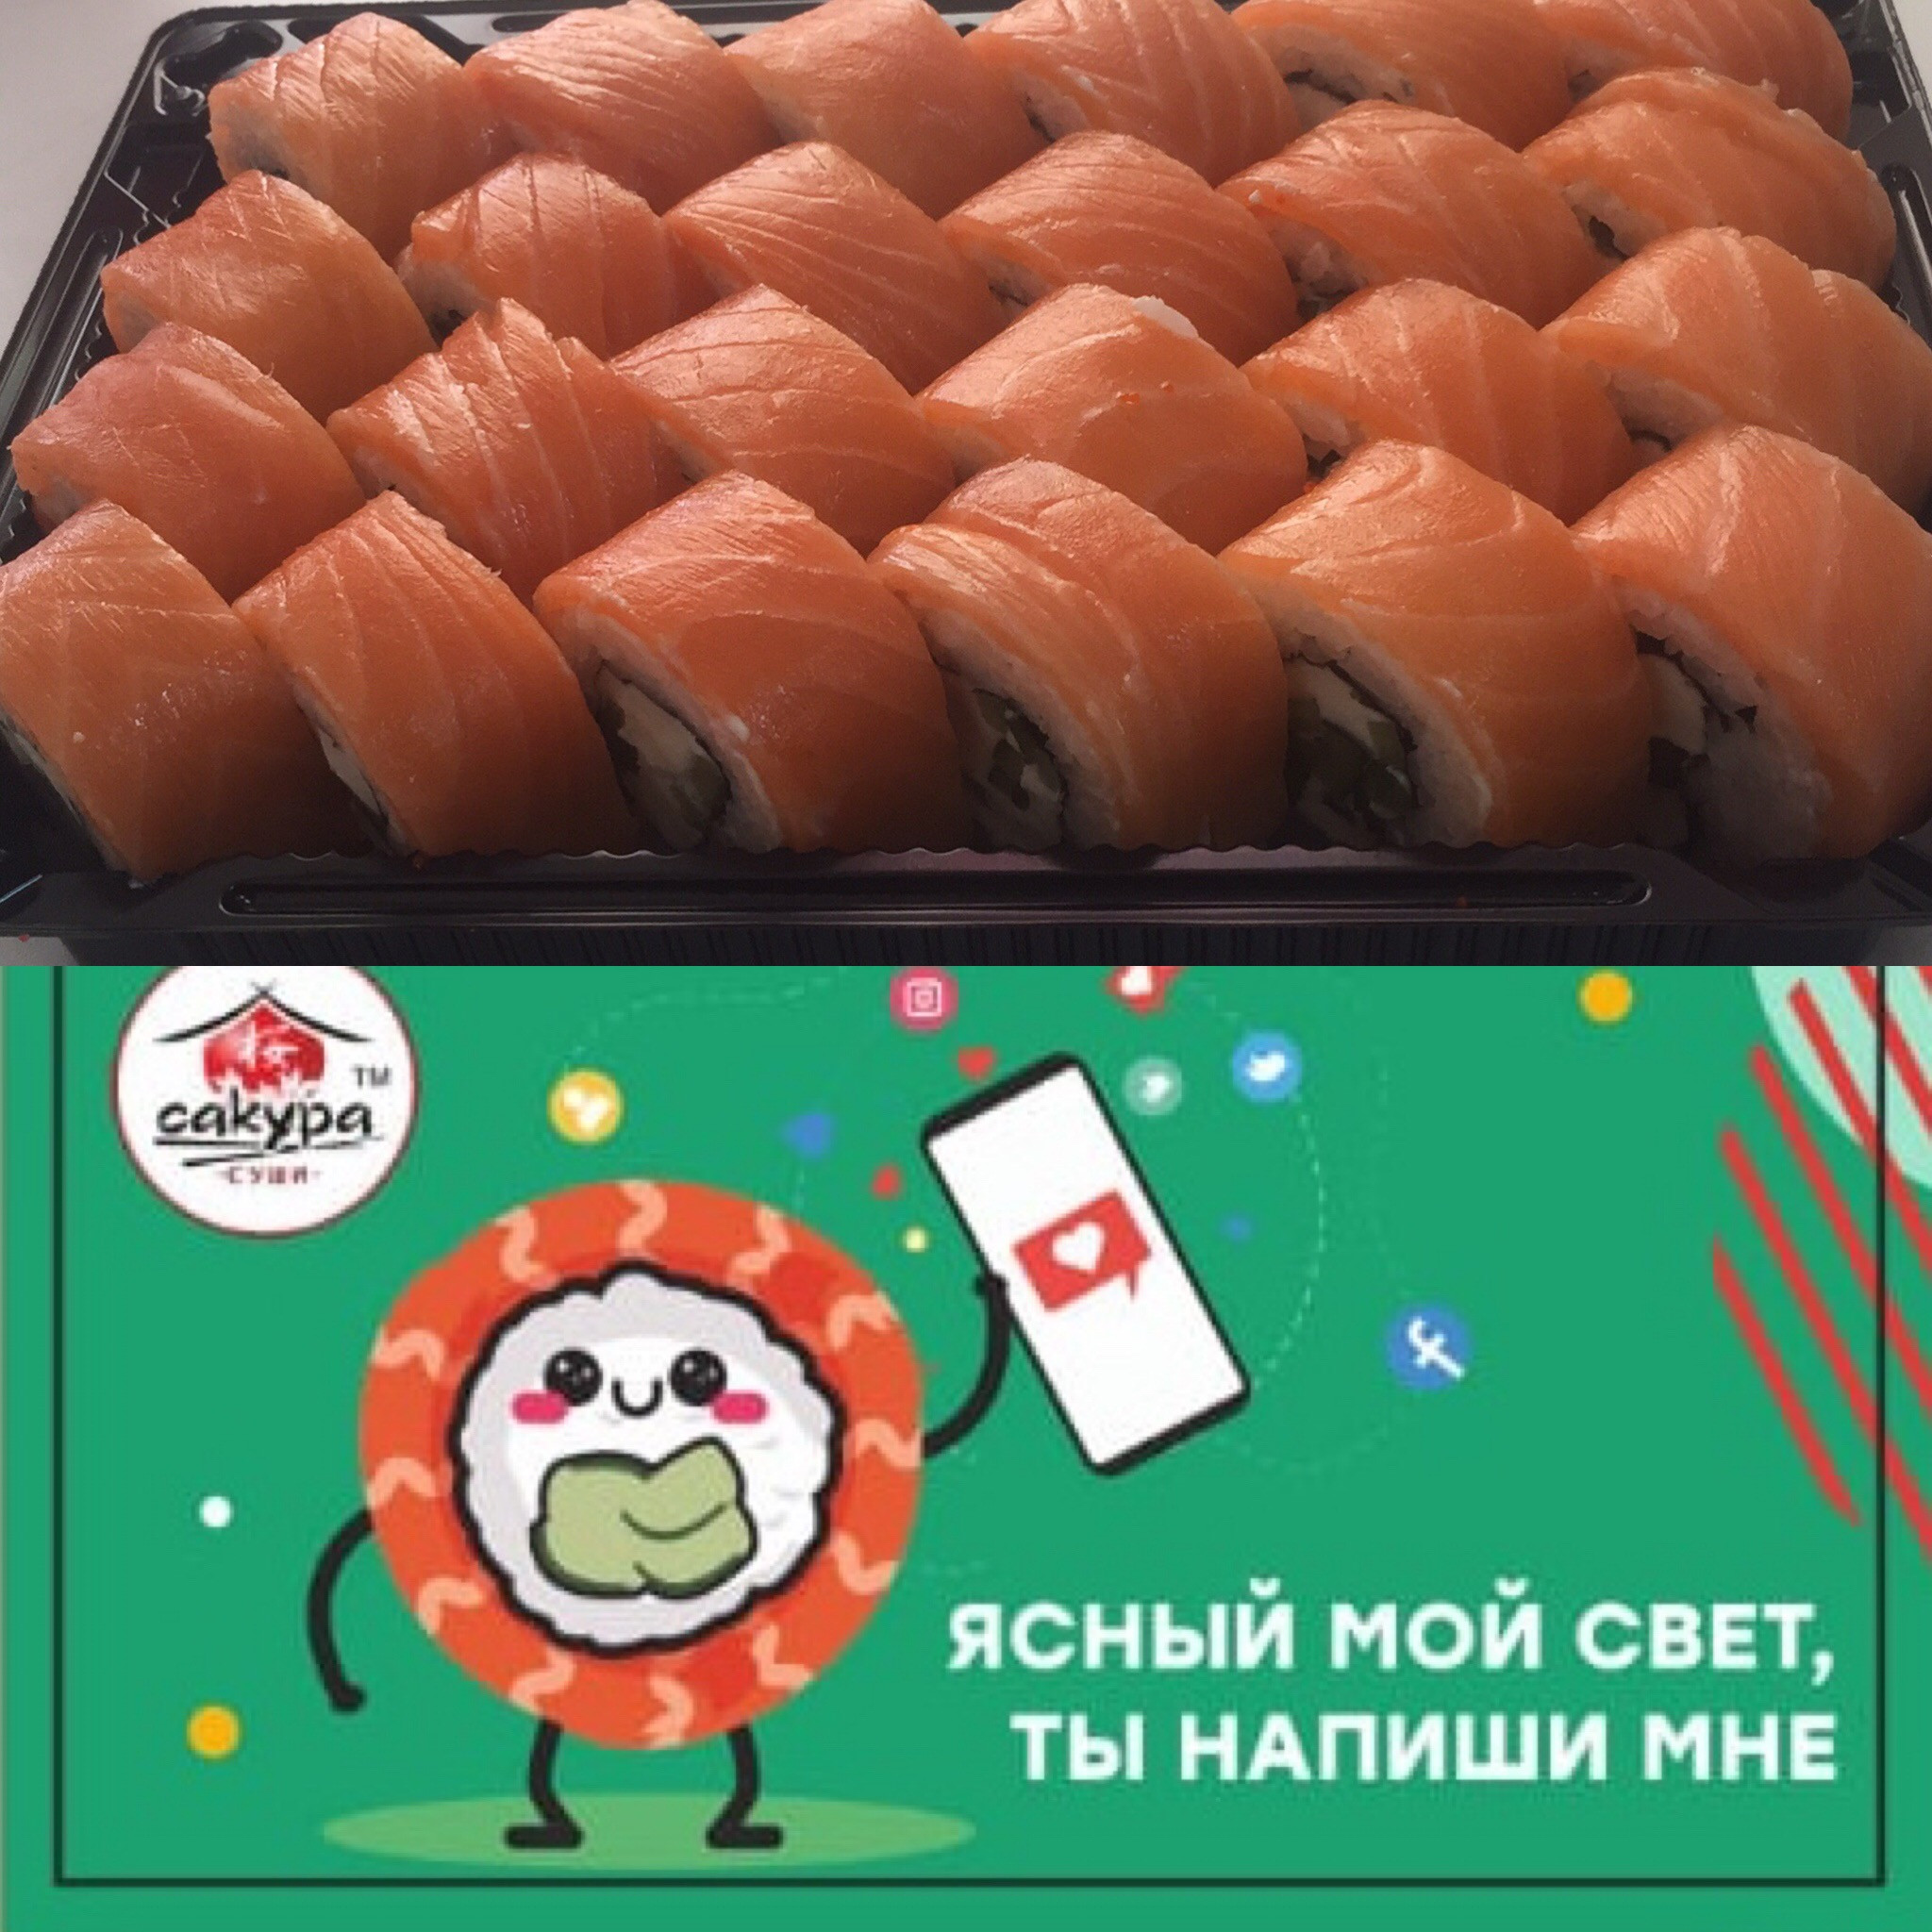 Сакура суши в новосибирске отзывы фото 26